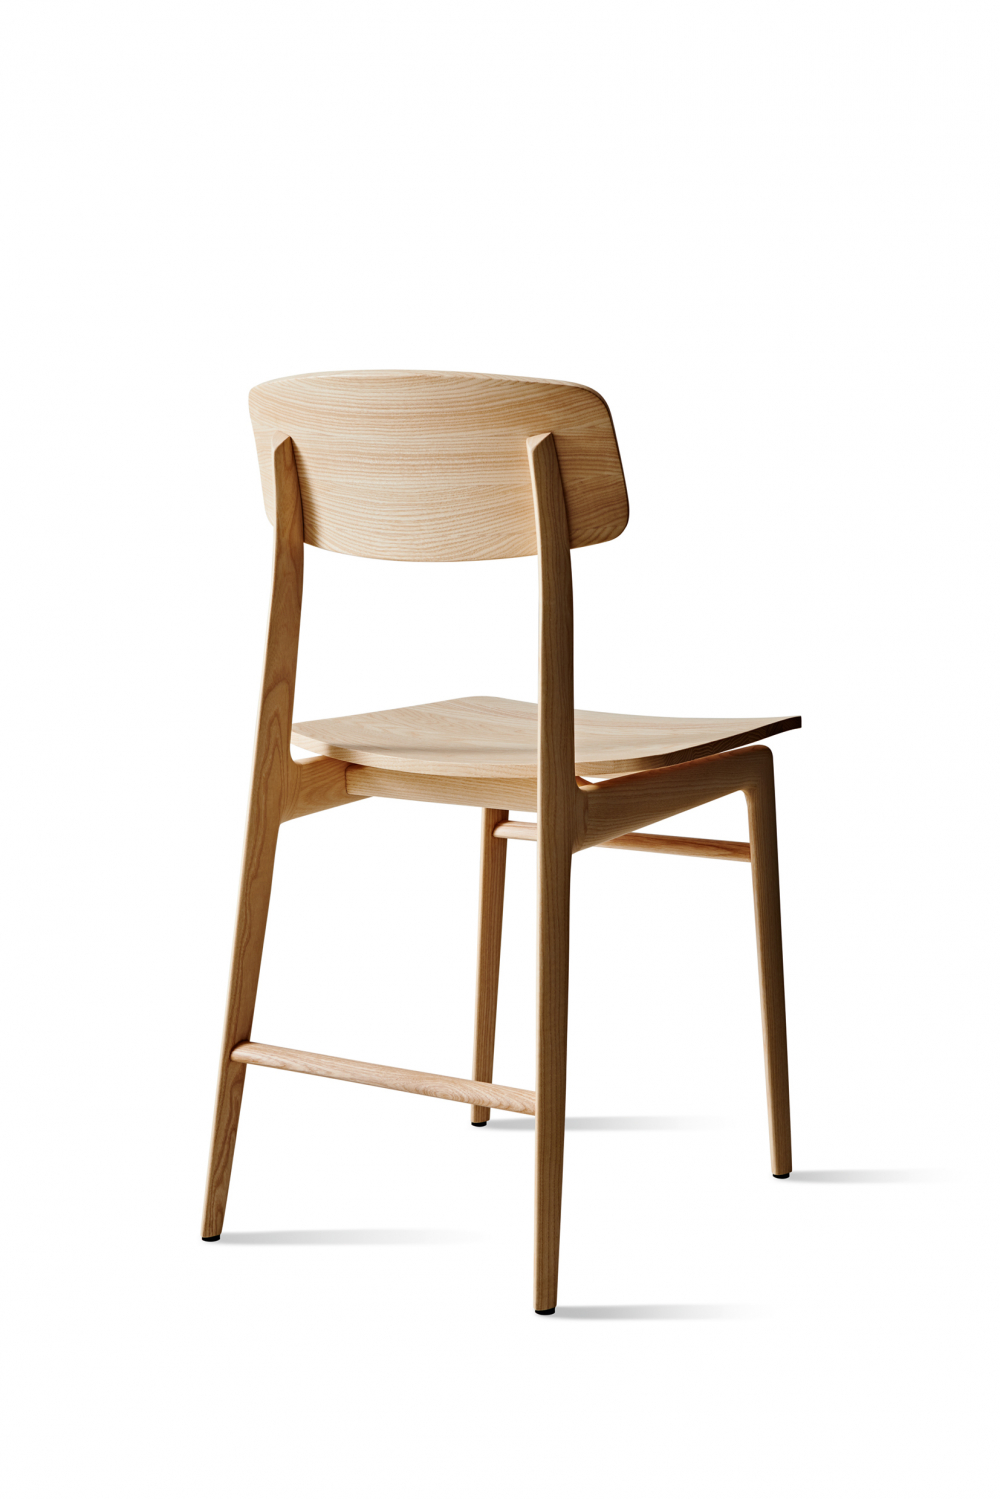 Woody chair by Francesco Meda 